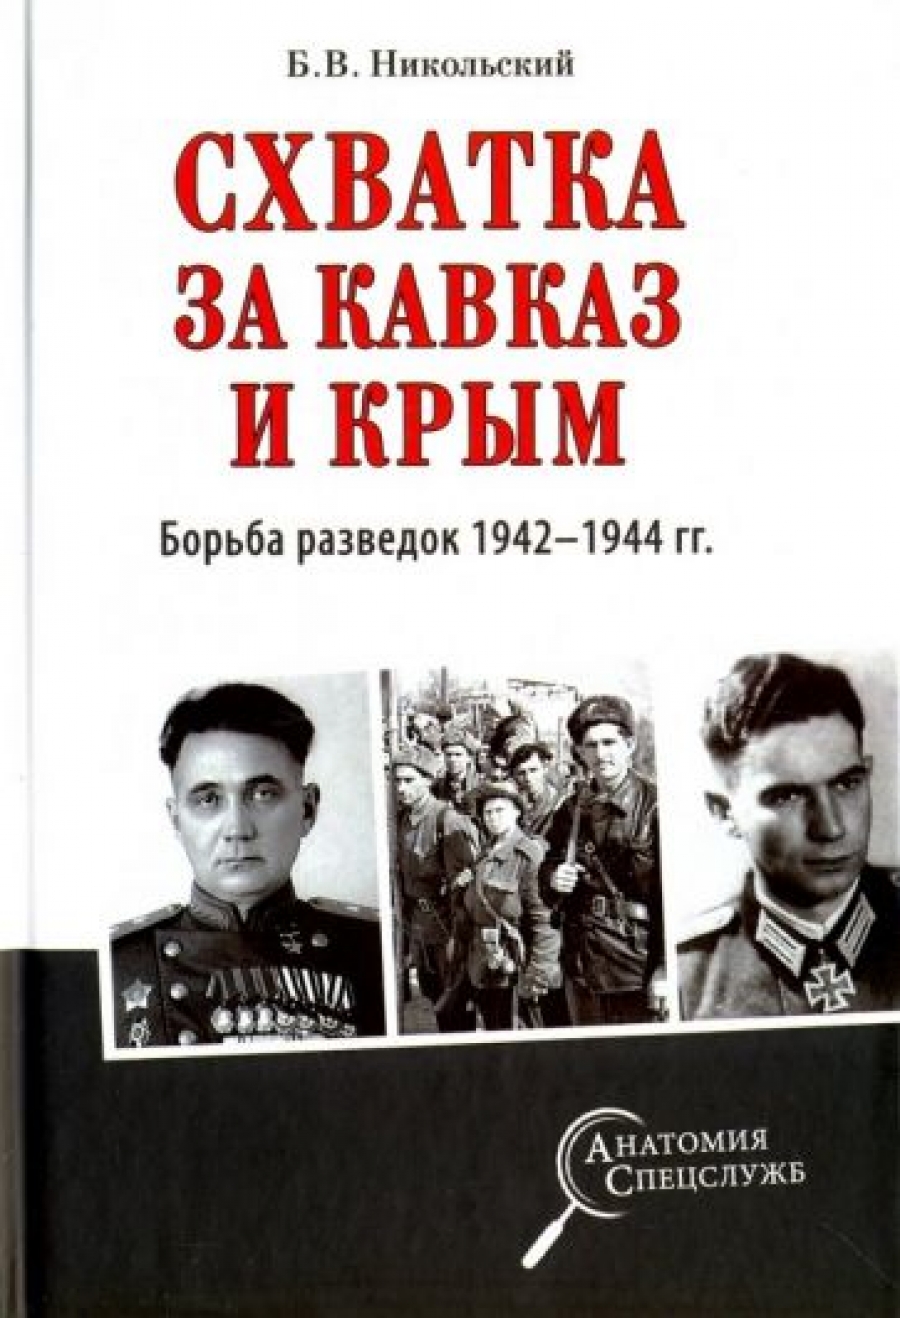  ..     .   1942-1944  